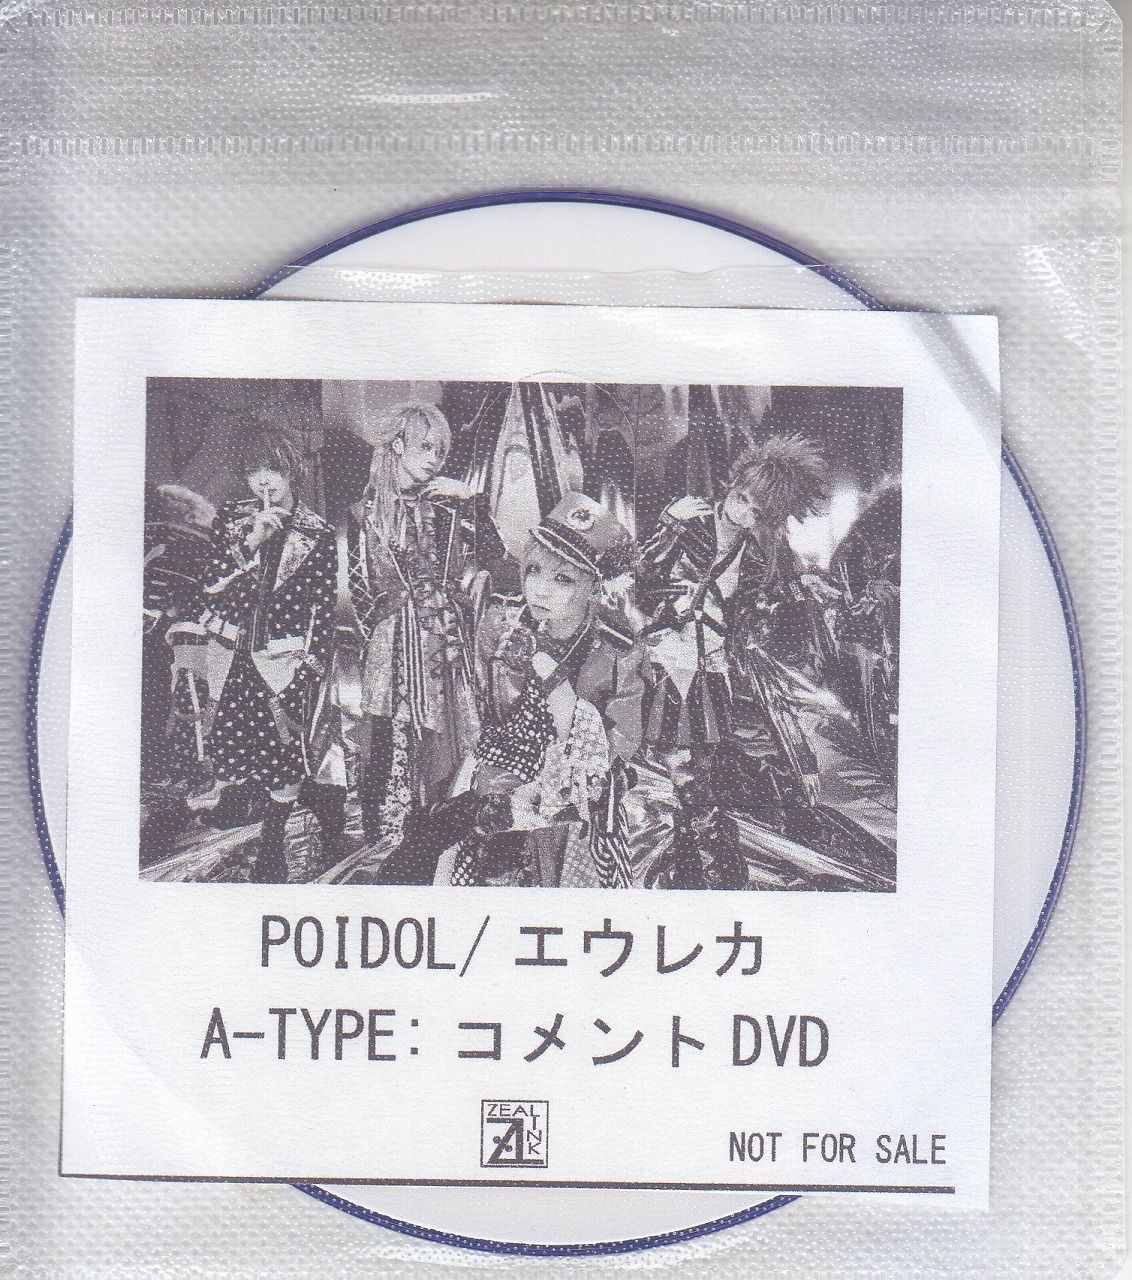 POIDOL ( ポイドル )  の DVD 【ZEAL LINK】エウレカ A-TYPE:コメントDVD